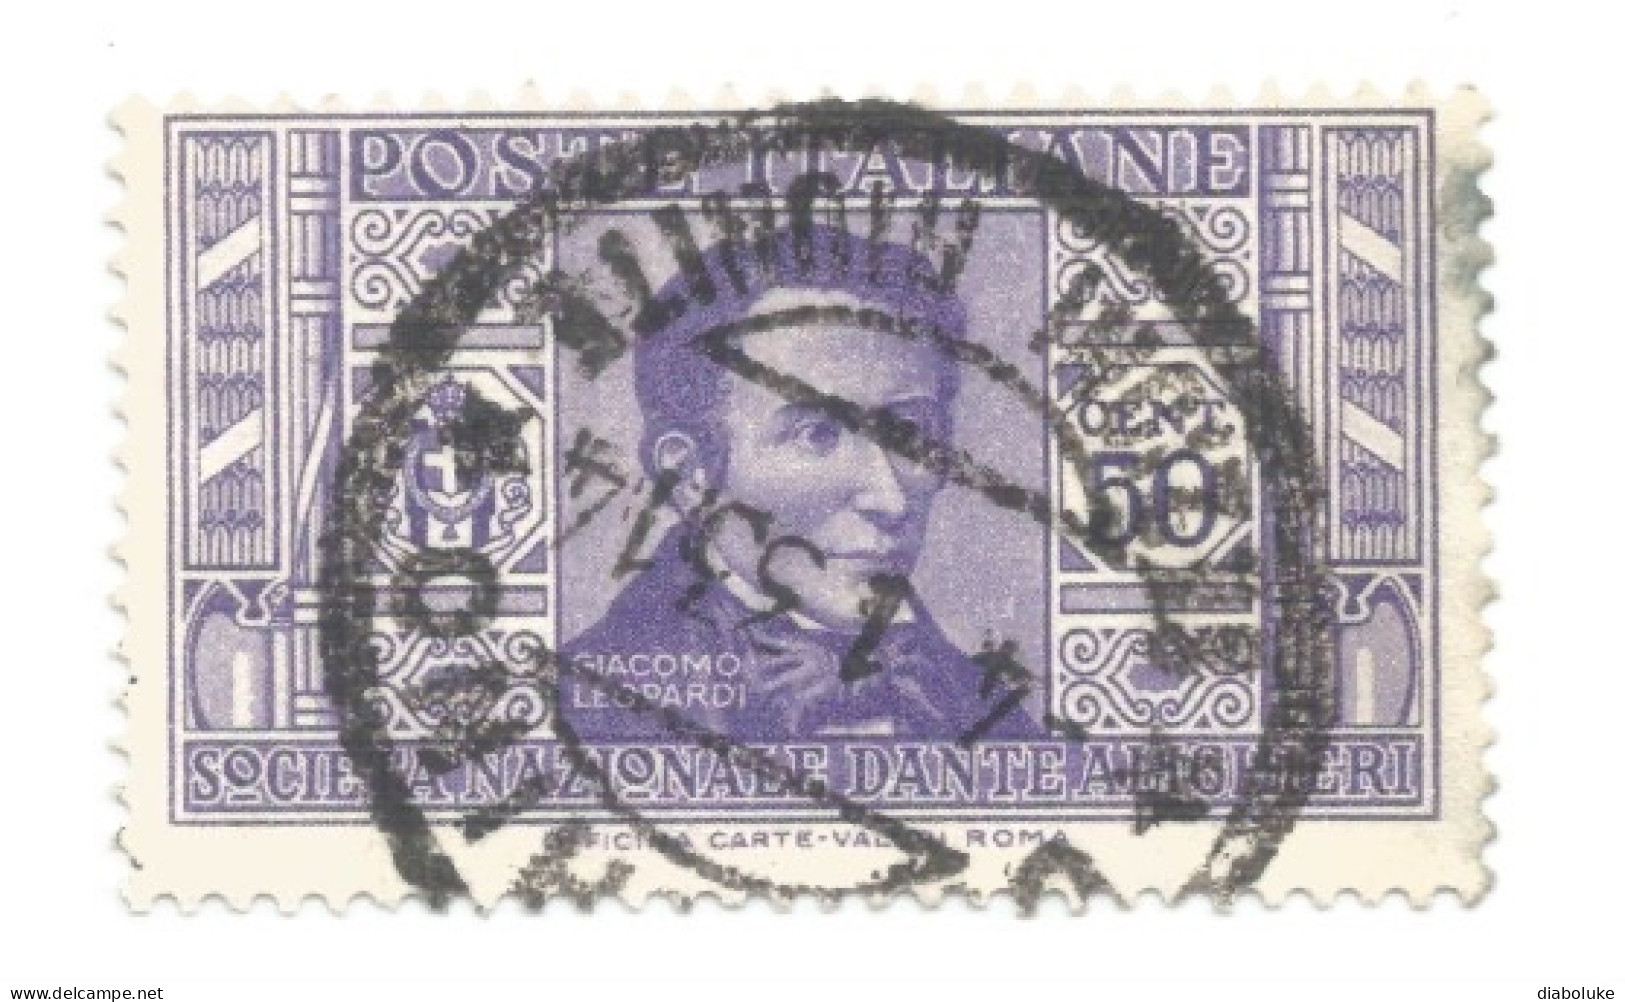 (REGNO D'ITALIA) 1932, PRO SOCIETÀ DANTE ALIGHIERI - Serietta di 11 francobolli usati, annulli da periziare